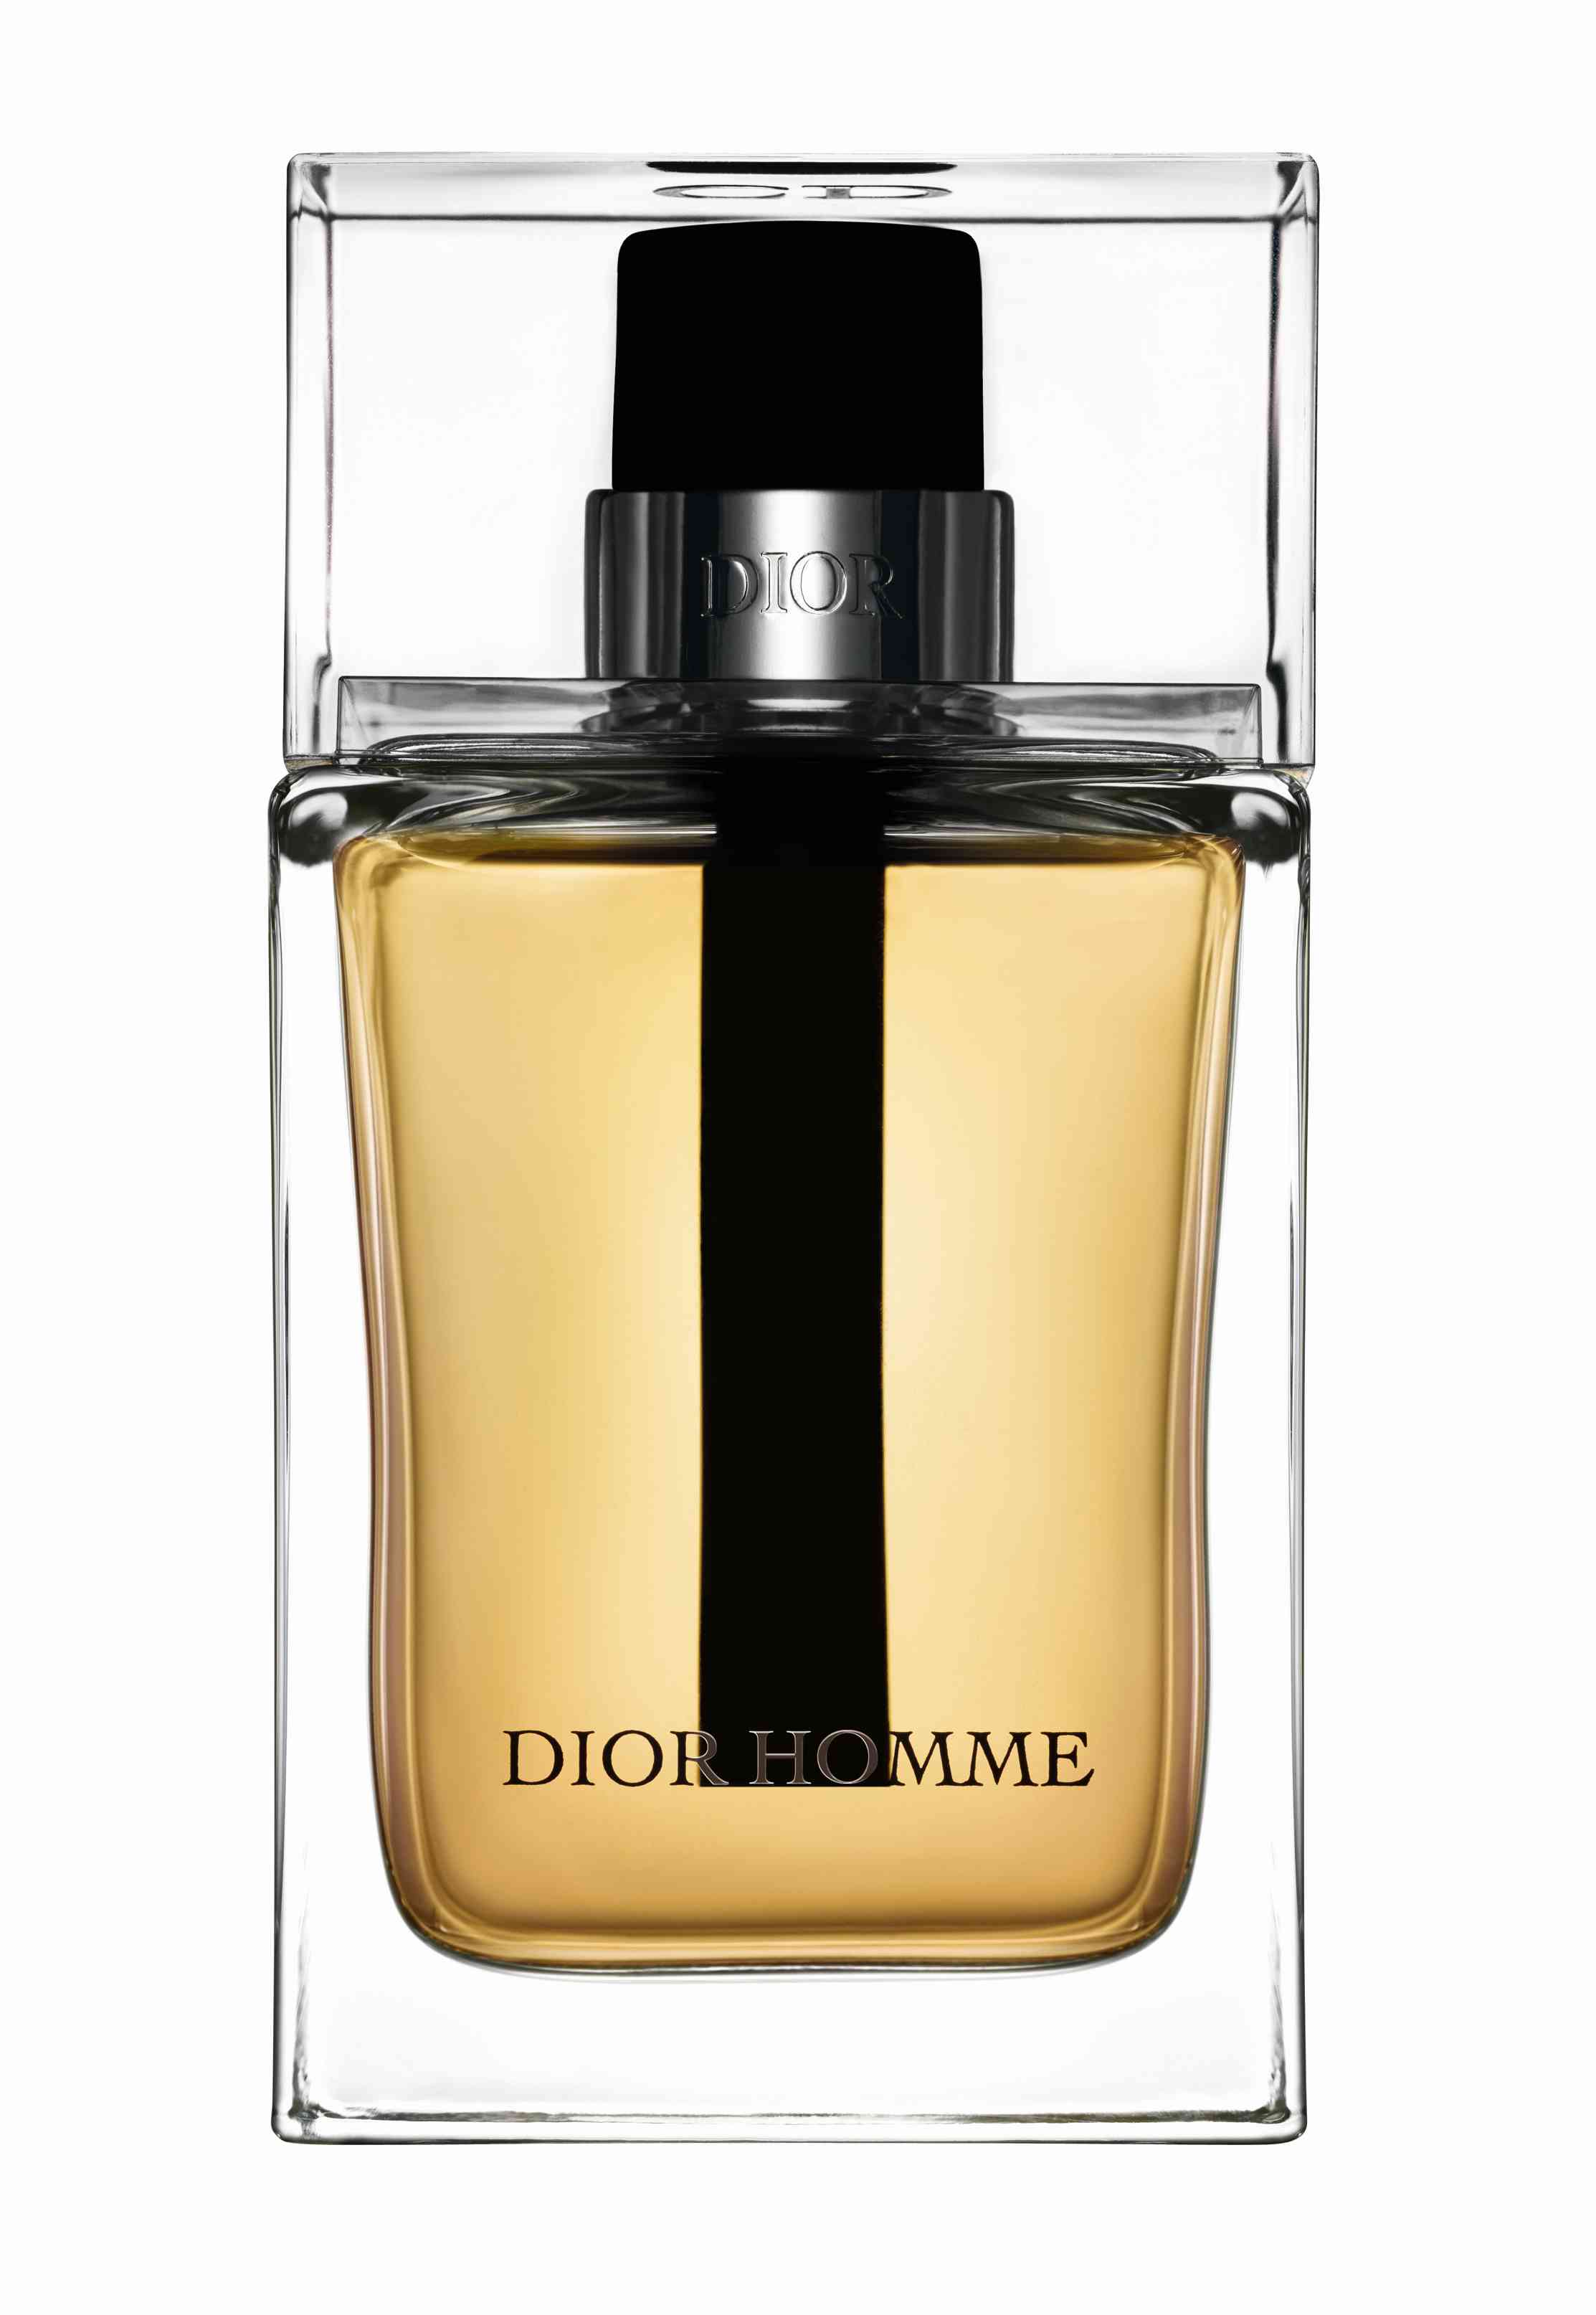 Dior Homme Christian Dior Cologne - un parfum pour homme 2011